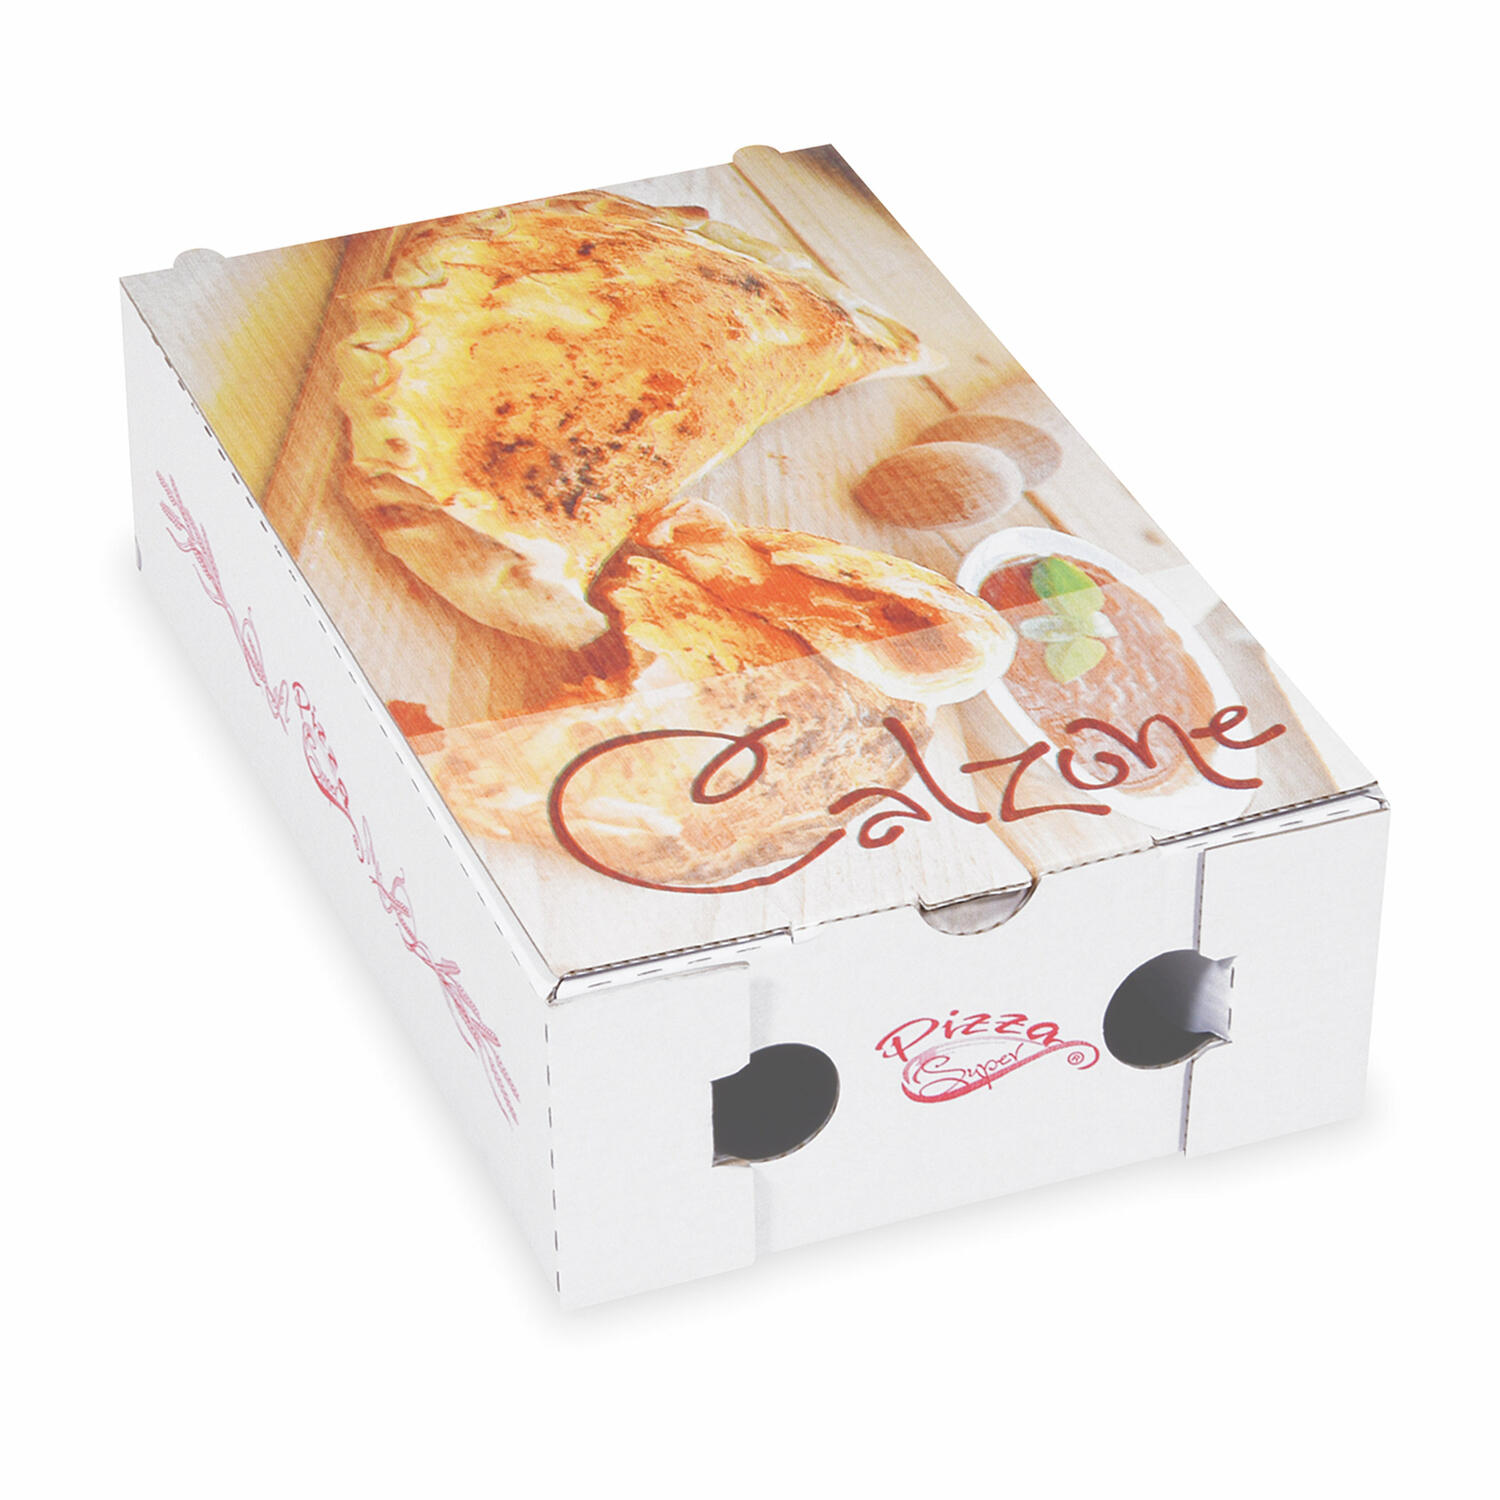 Pizzakarton CALZONE mit neutralem Motiv, 27 x 16,5 x 7,5 cm, 100 Stk.